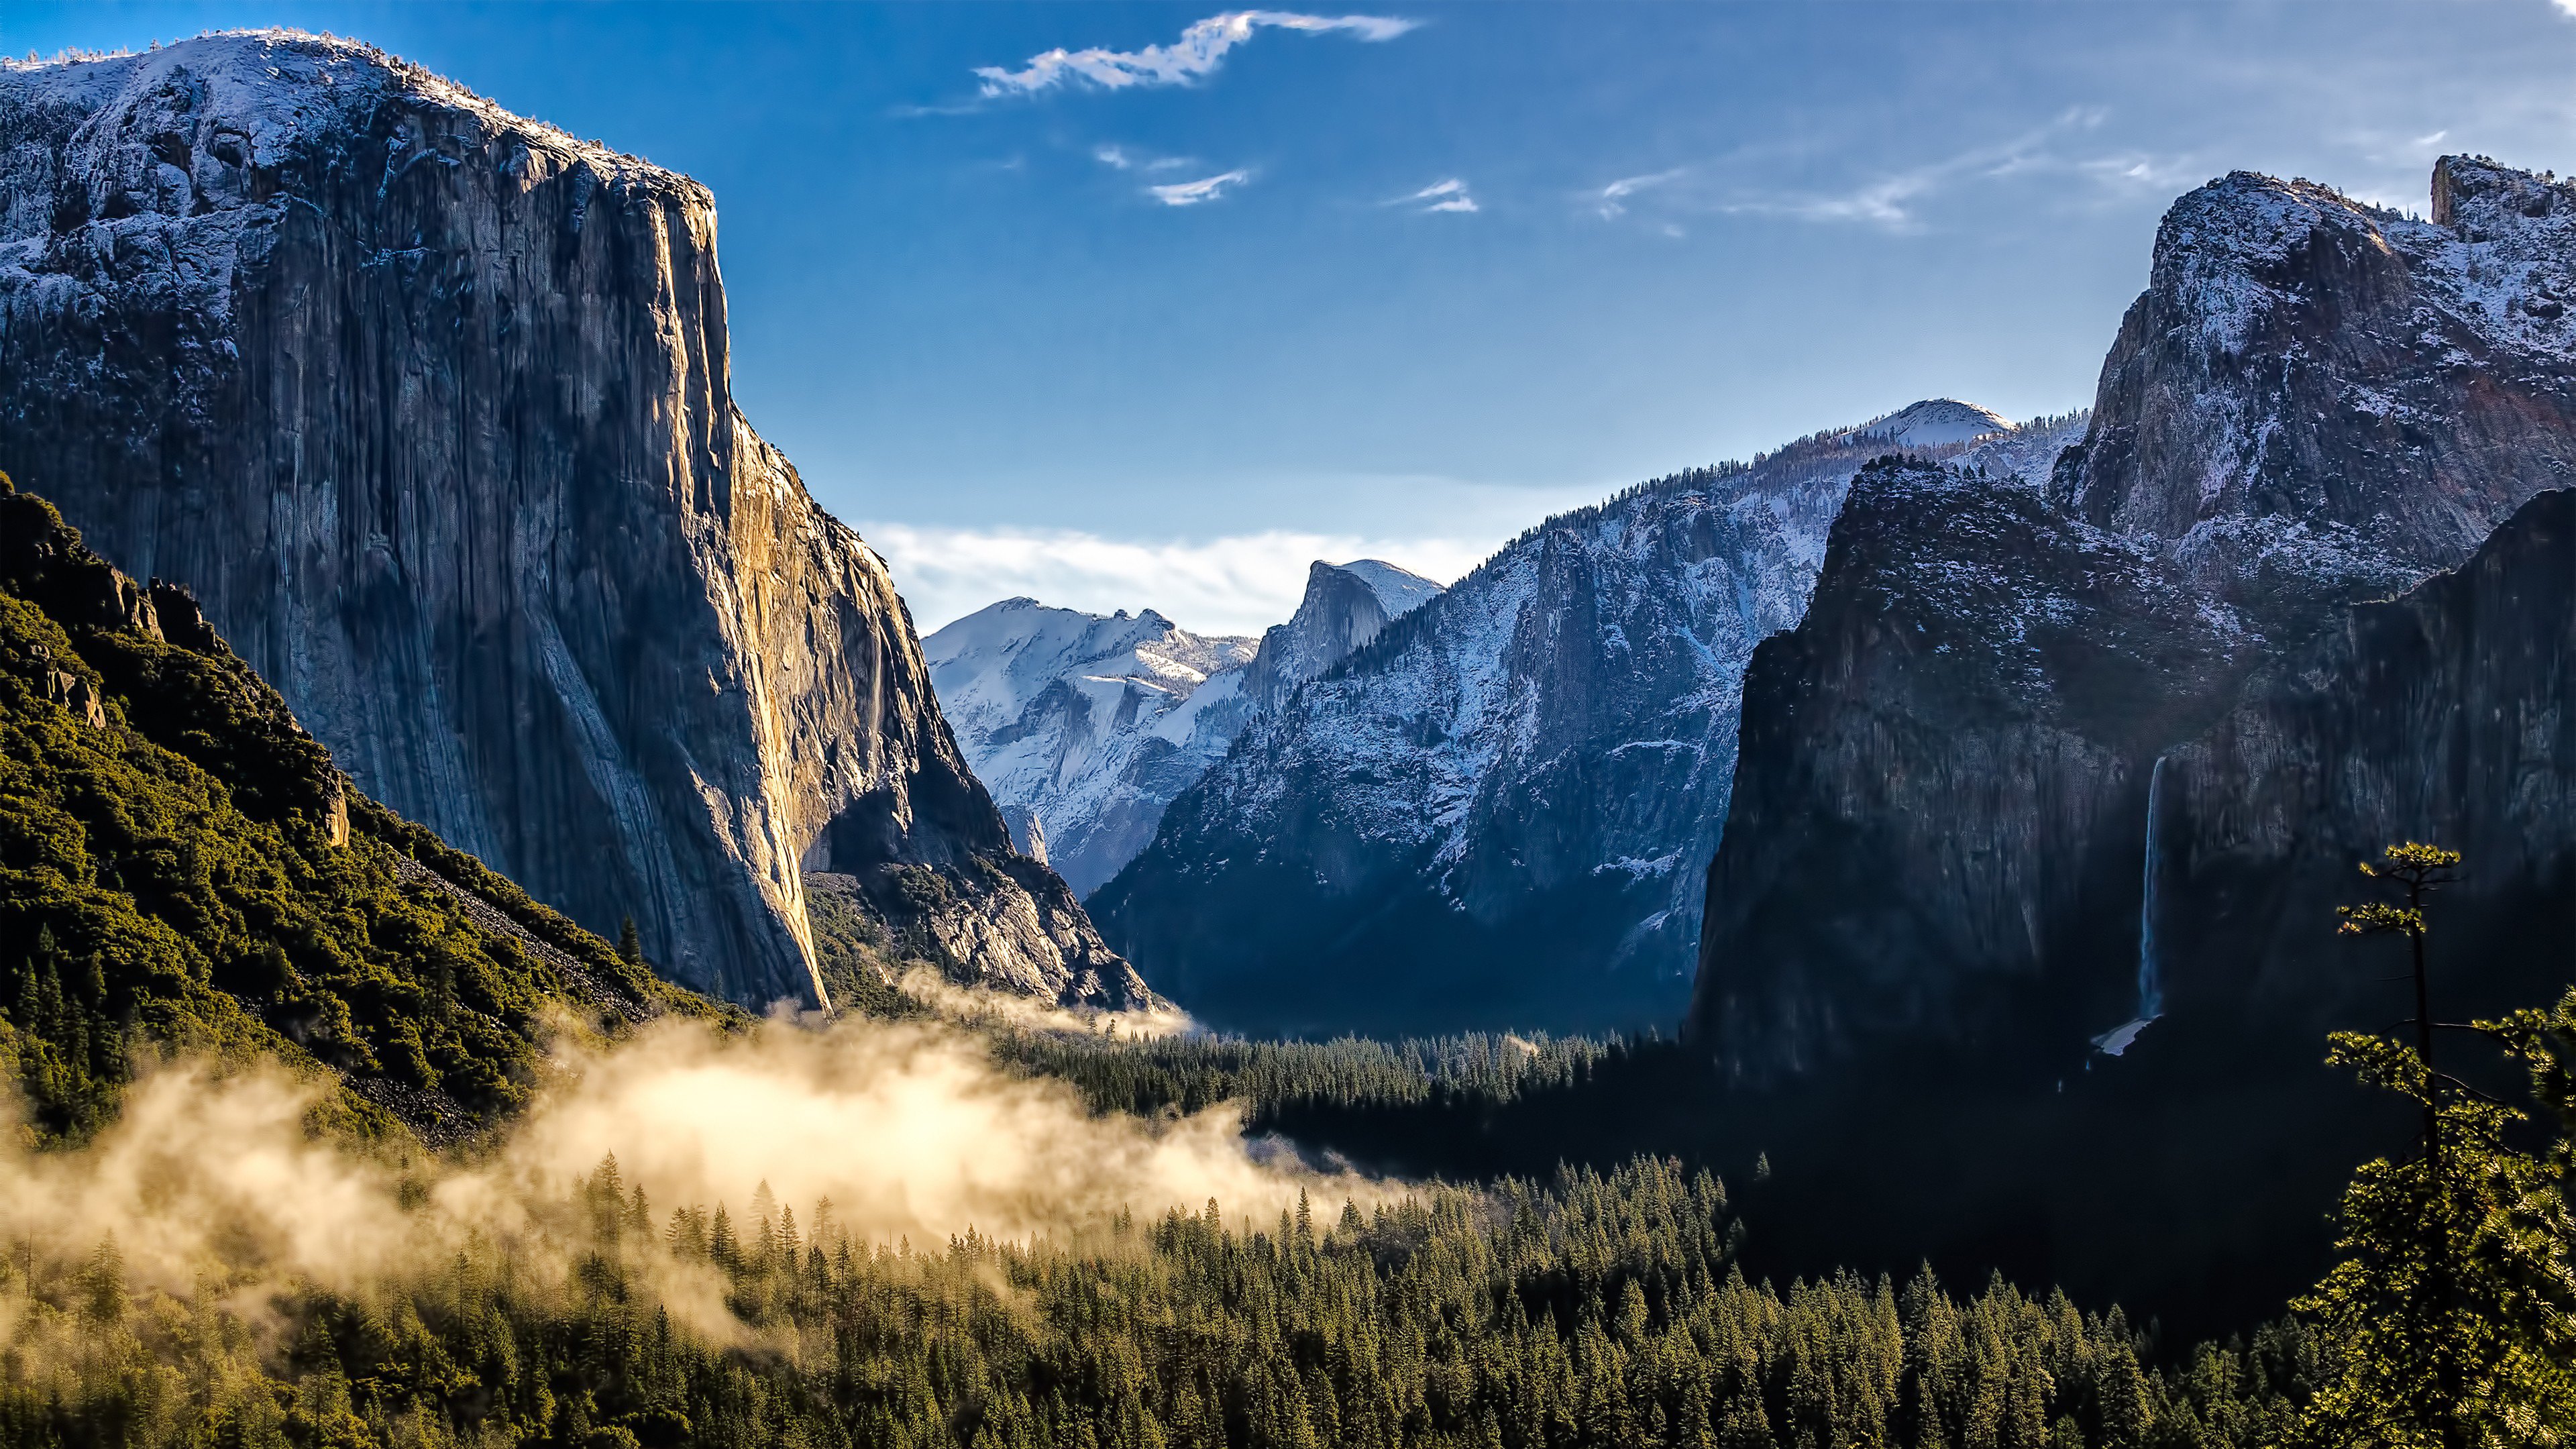 Tận hưởng sự tươi tốt và thanh bình của thiên nhiên tại công viên quốc gia Yosemite bằng video 4K độc đáo. Màn hình sậm màu và đầy màu sắc sẽ cho bạn trải nghiệm tuyệt vời nhất về các vùng đất hoang sơ, rừng thẳm sâu, thác nước lung linh và rất nhiều loại thực vật khác. Hãy xem video để tận hưởng một khoảnh khắc hoàn hảo cùng thiên nhiên.